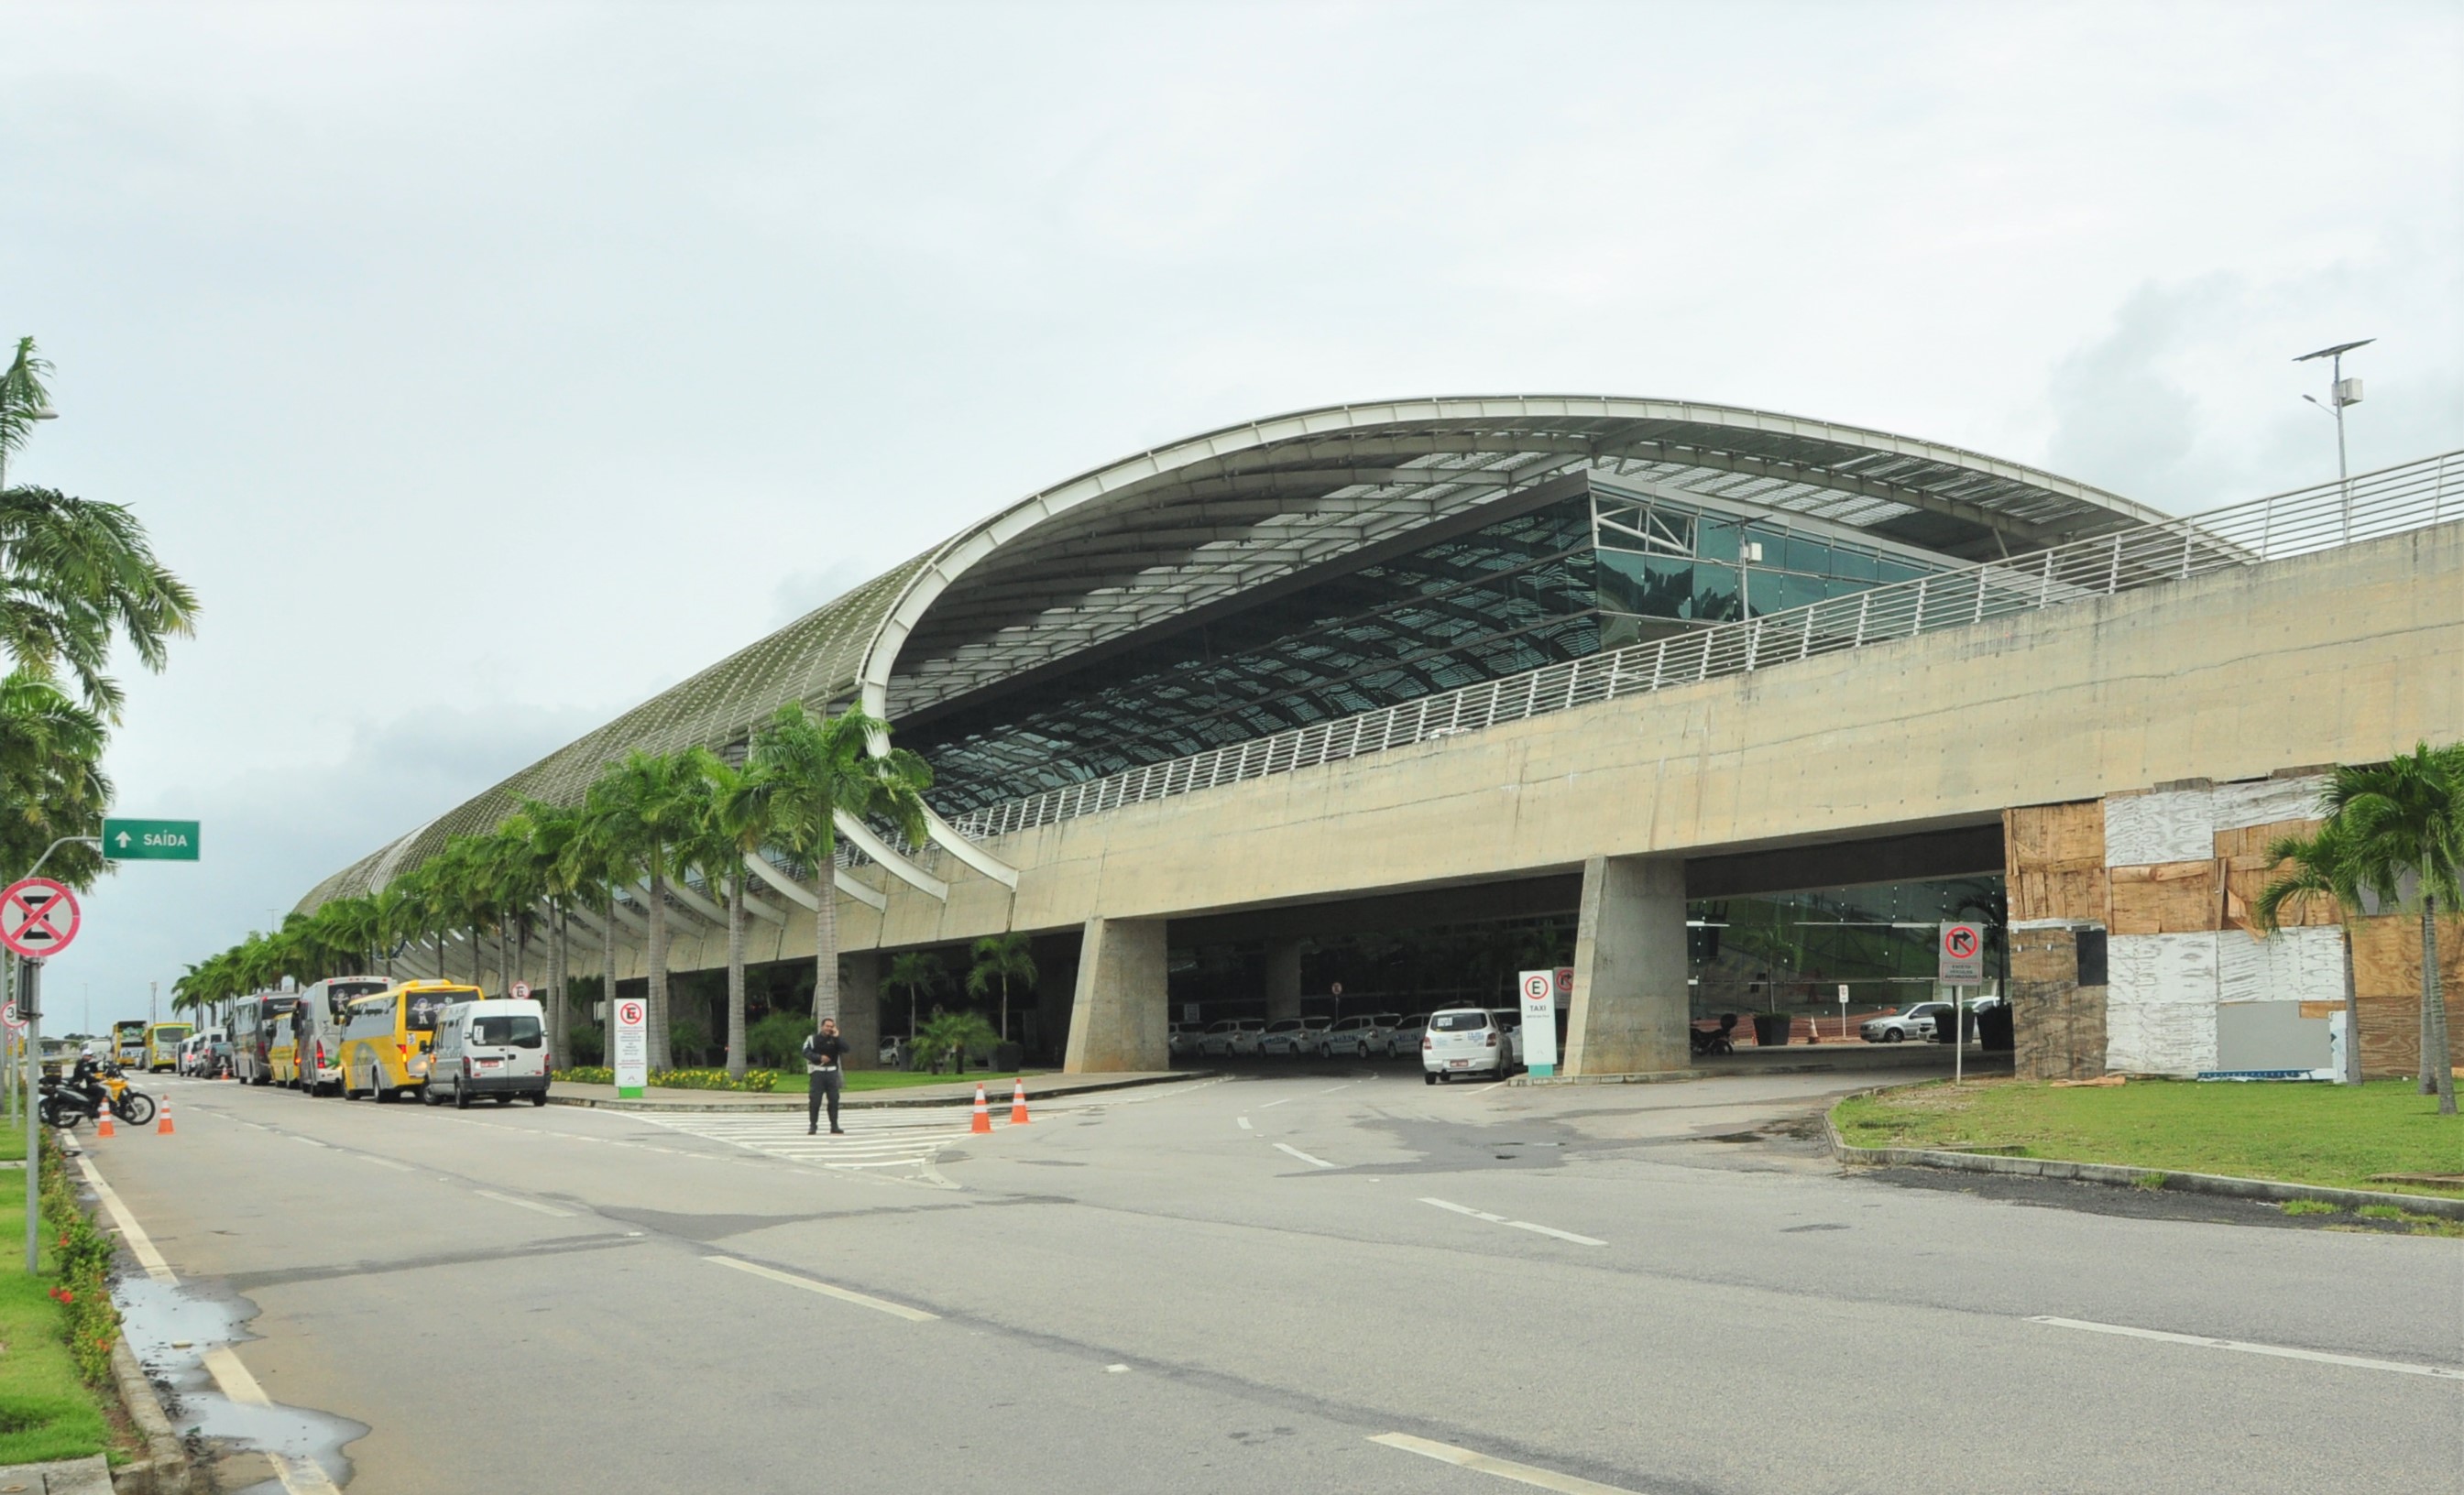 Aeroporto Internacional Aluízio Alves 44 1